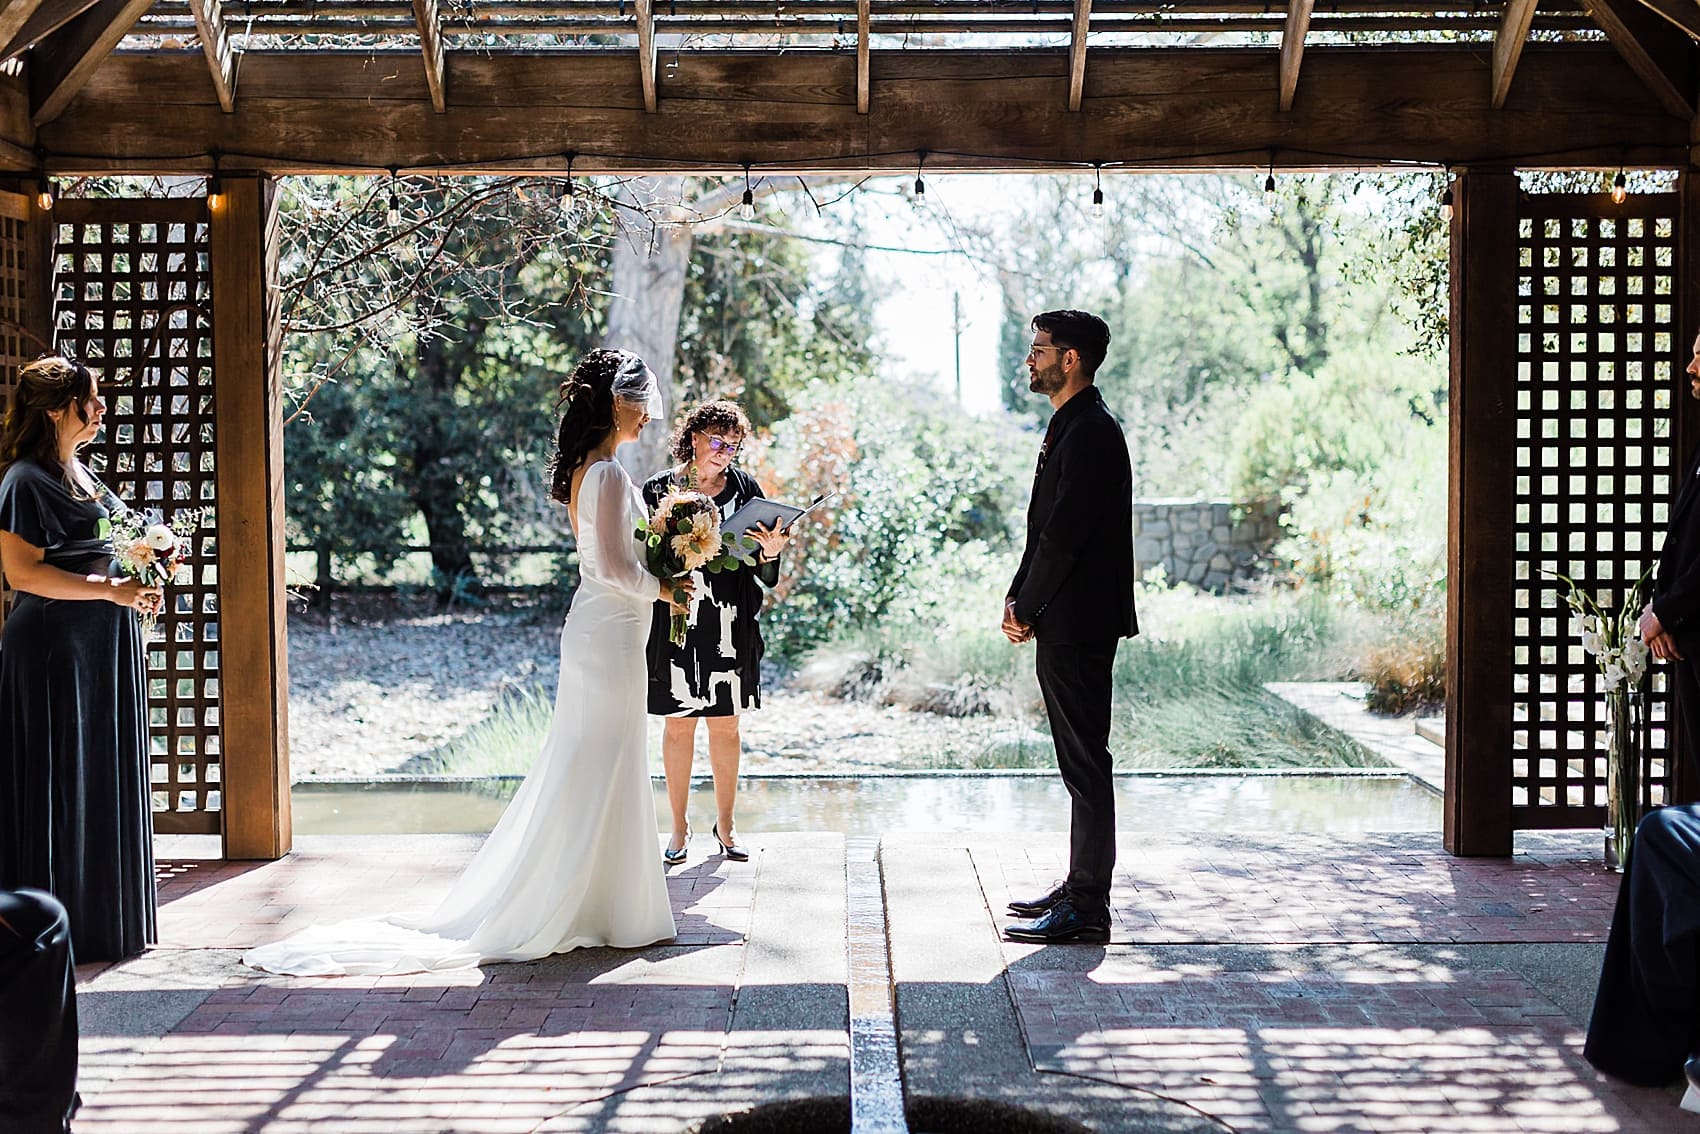 Wedding Vows at Botanical Garden wedding in Claremont